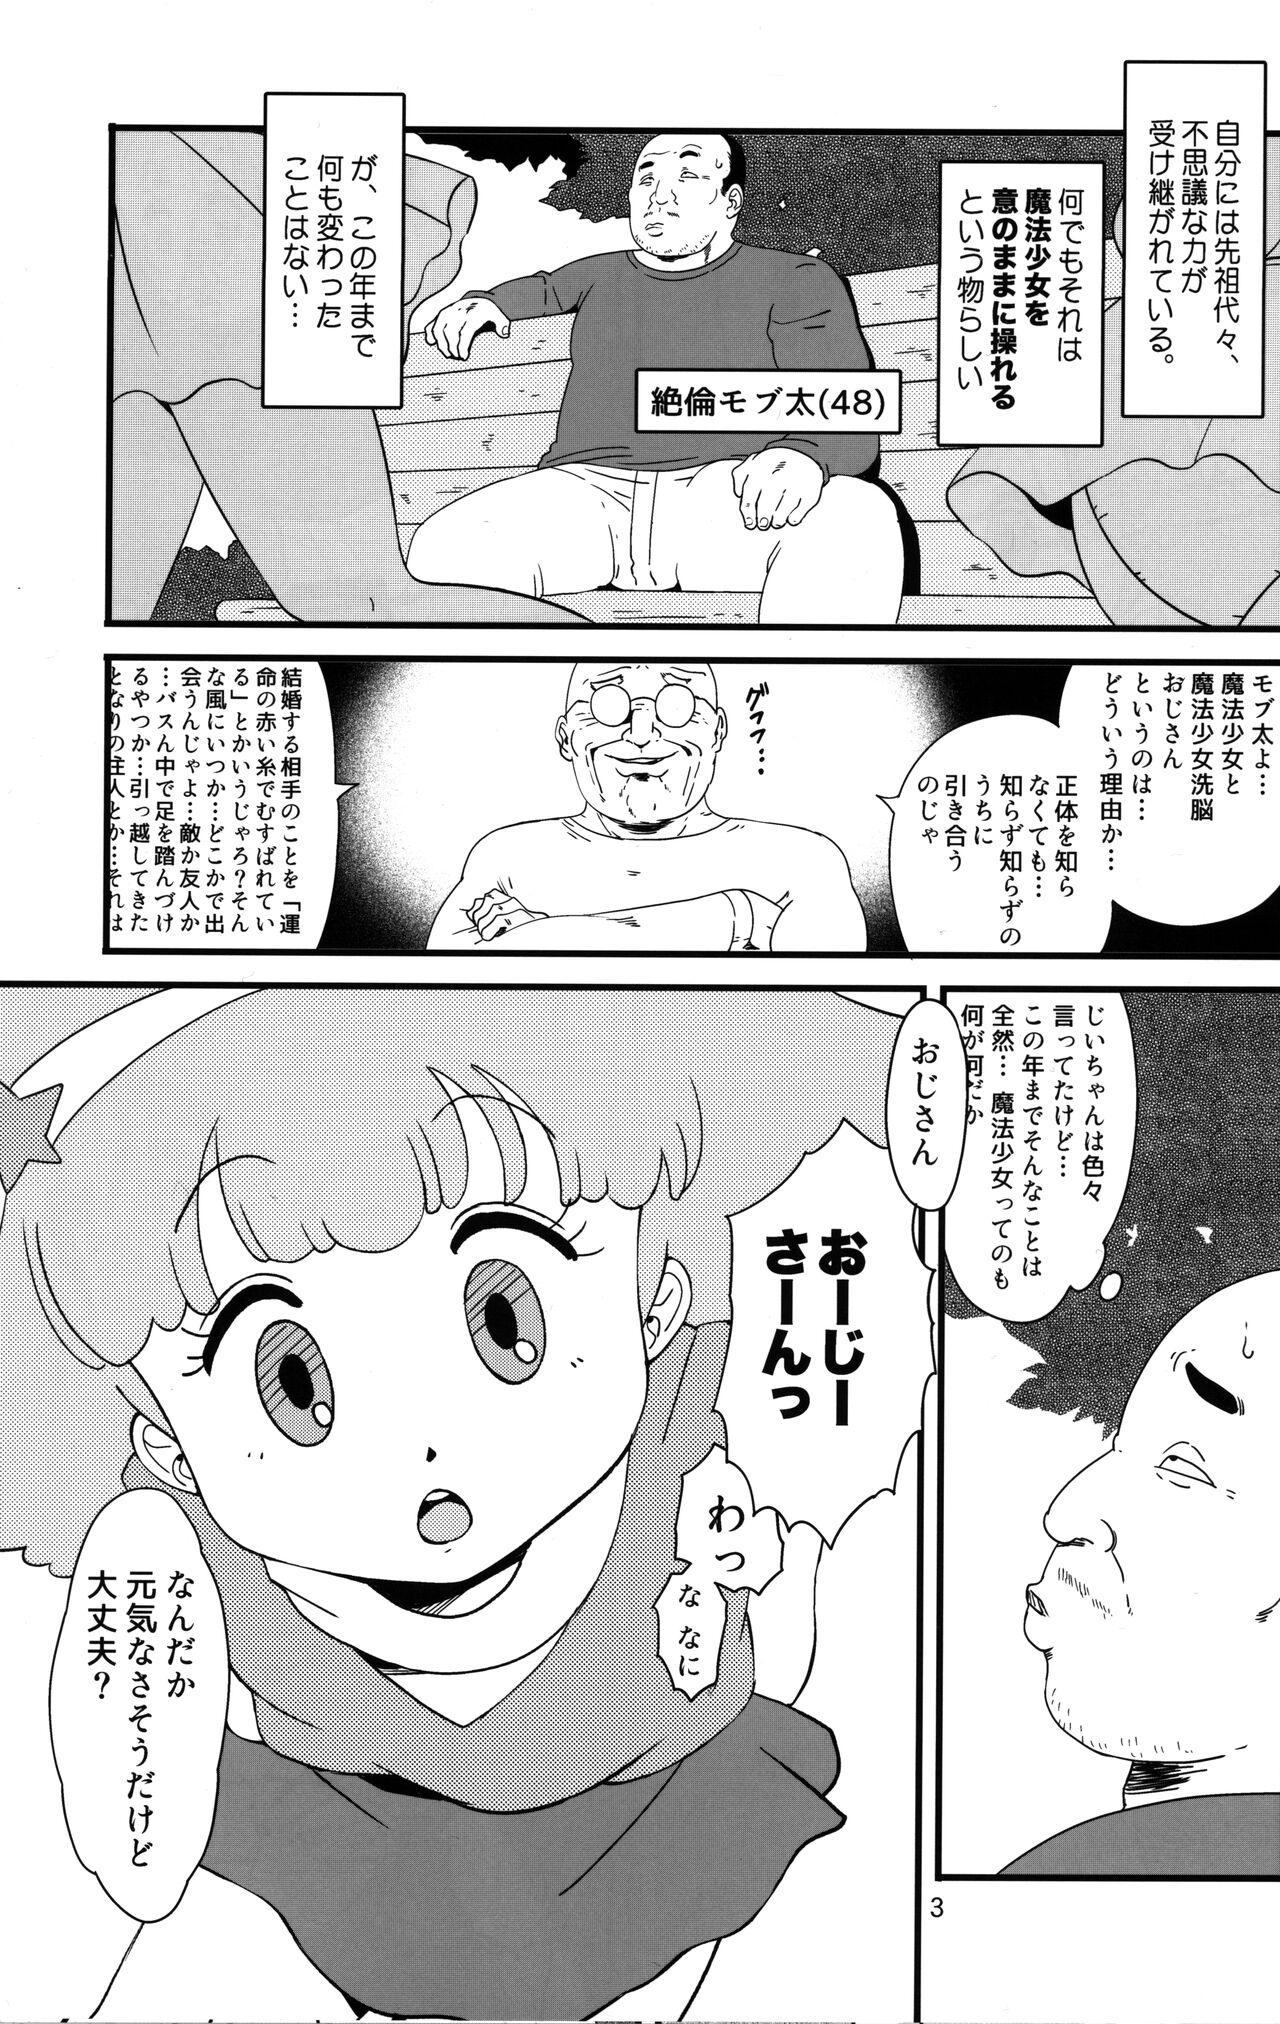 8teenxxx Ashi Damashii - Minky momo Floral magician mary bell | hana no mahou tsukai marybell Gay Kissing - Page 3